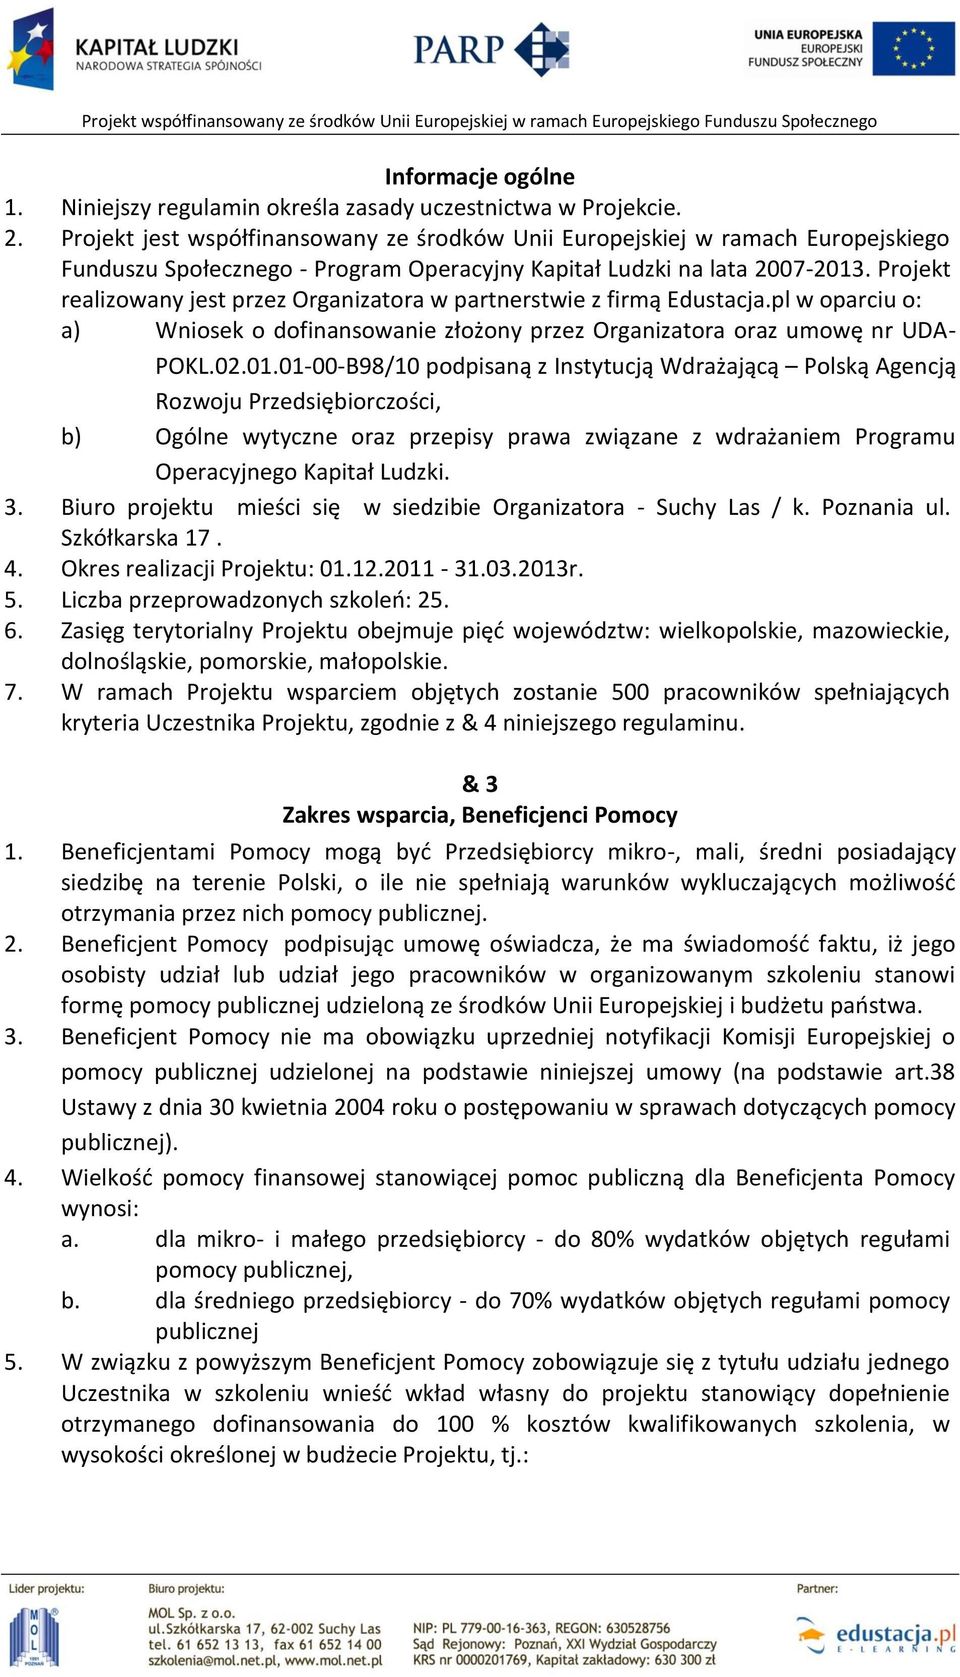 Projekt realizowany jest przez Organizatora w partnerstwie z firmą Edustacja.pl w oparciu o: a) Wniosek o dofinansowanie złożony przez Organizatora oraz umowę nr UDA- POKL.02.01.